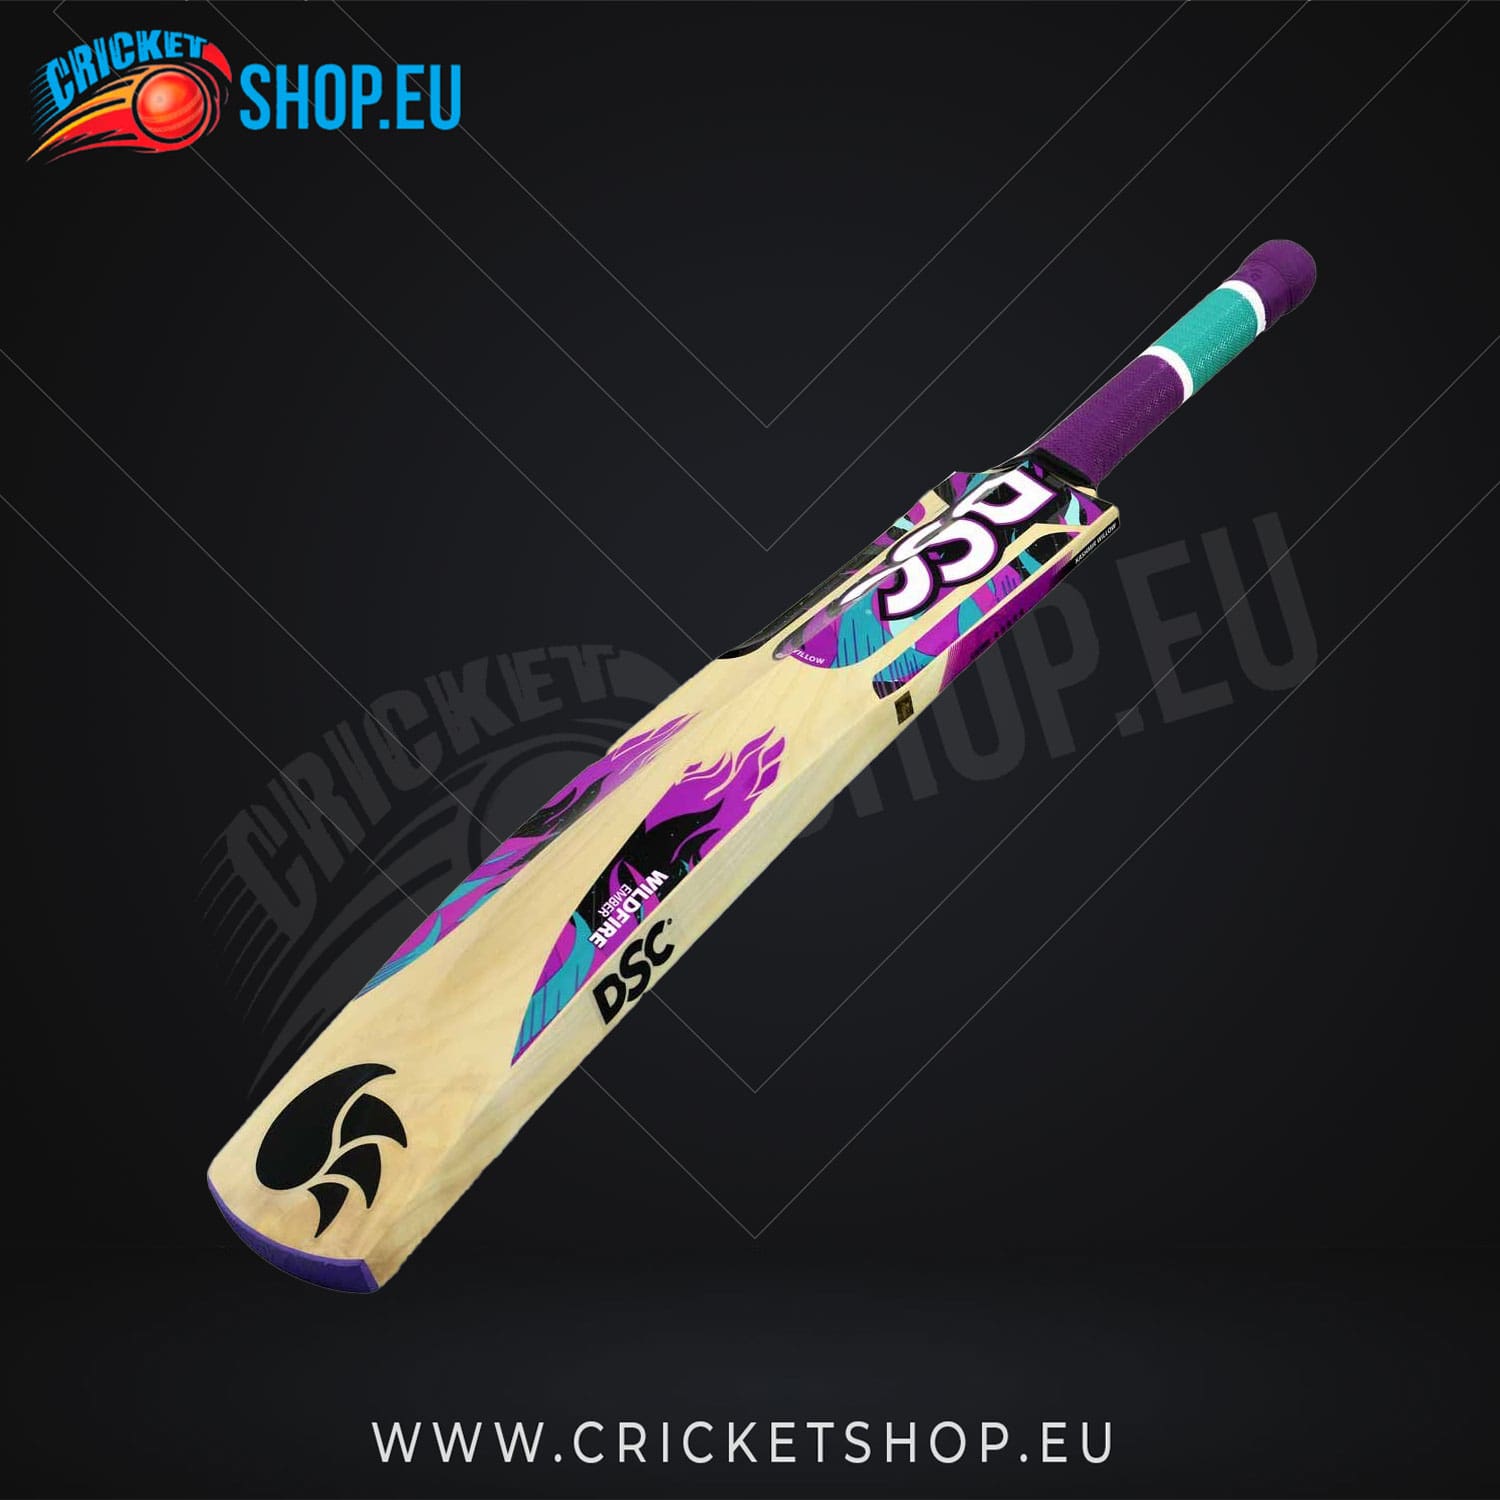 DSC Wildfire Ember Kashmir Willow Cricket Tennis Bat